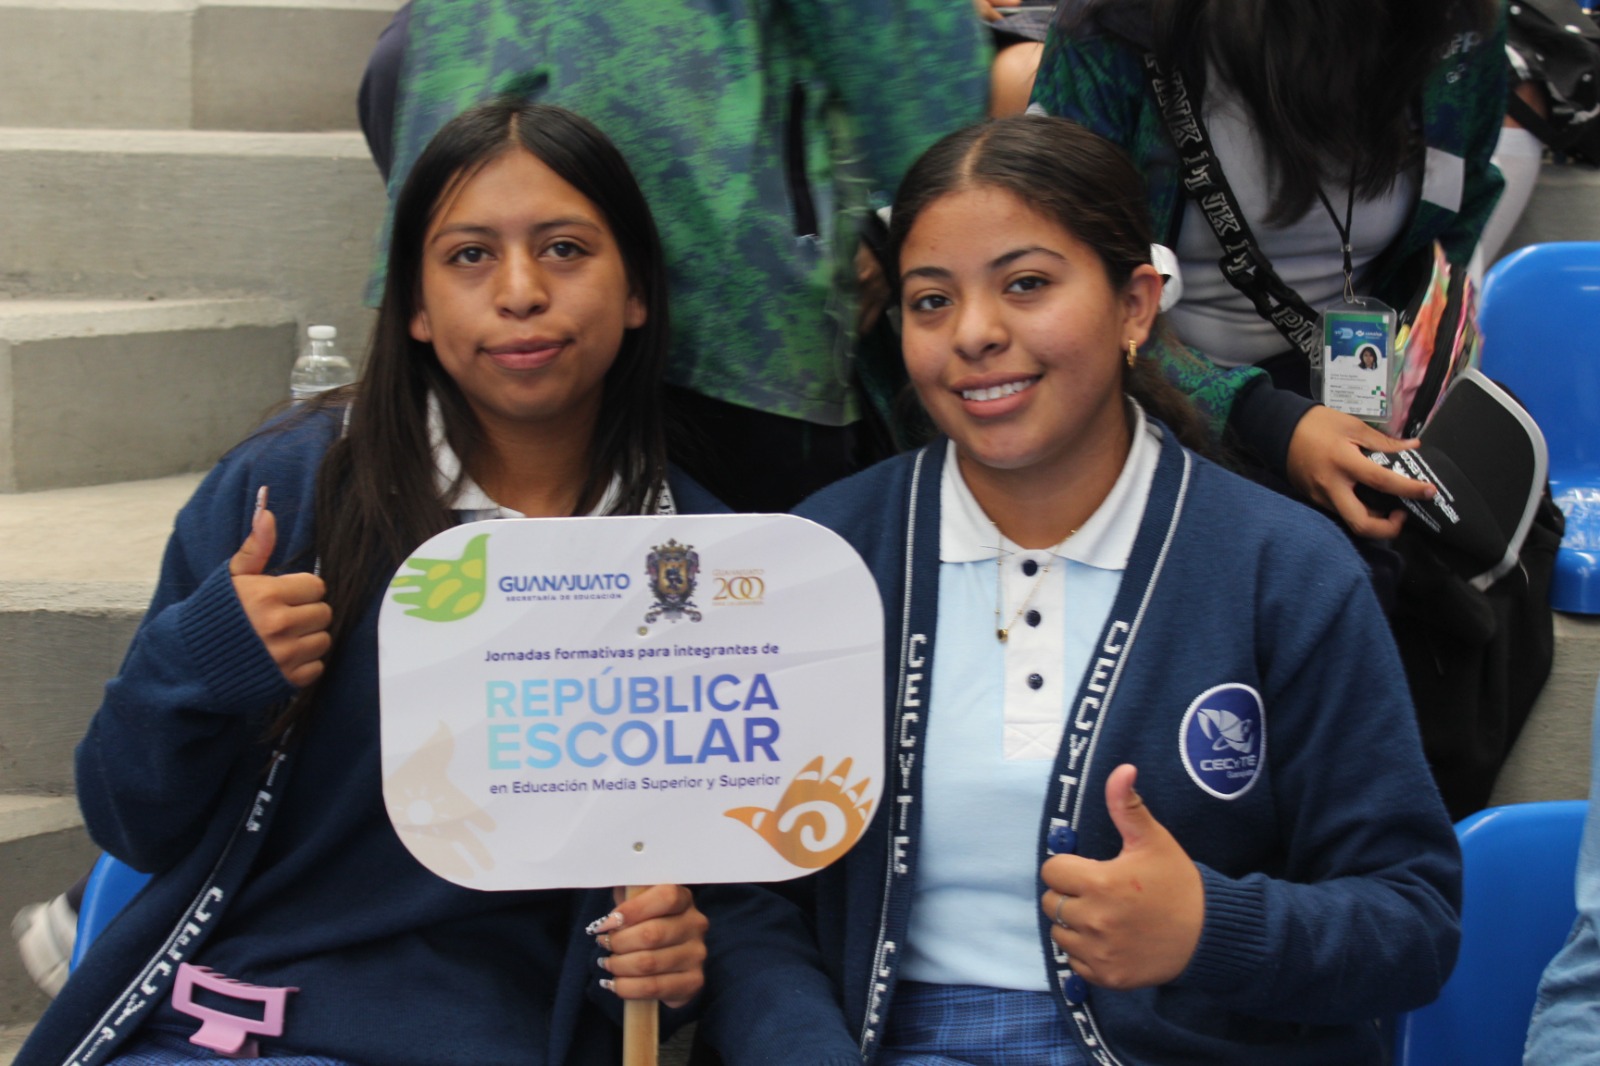 Jóvenes Líderes participan en Jornada Formativa de República Escolar